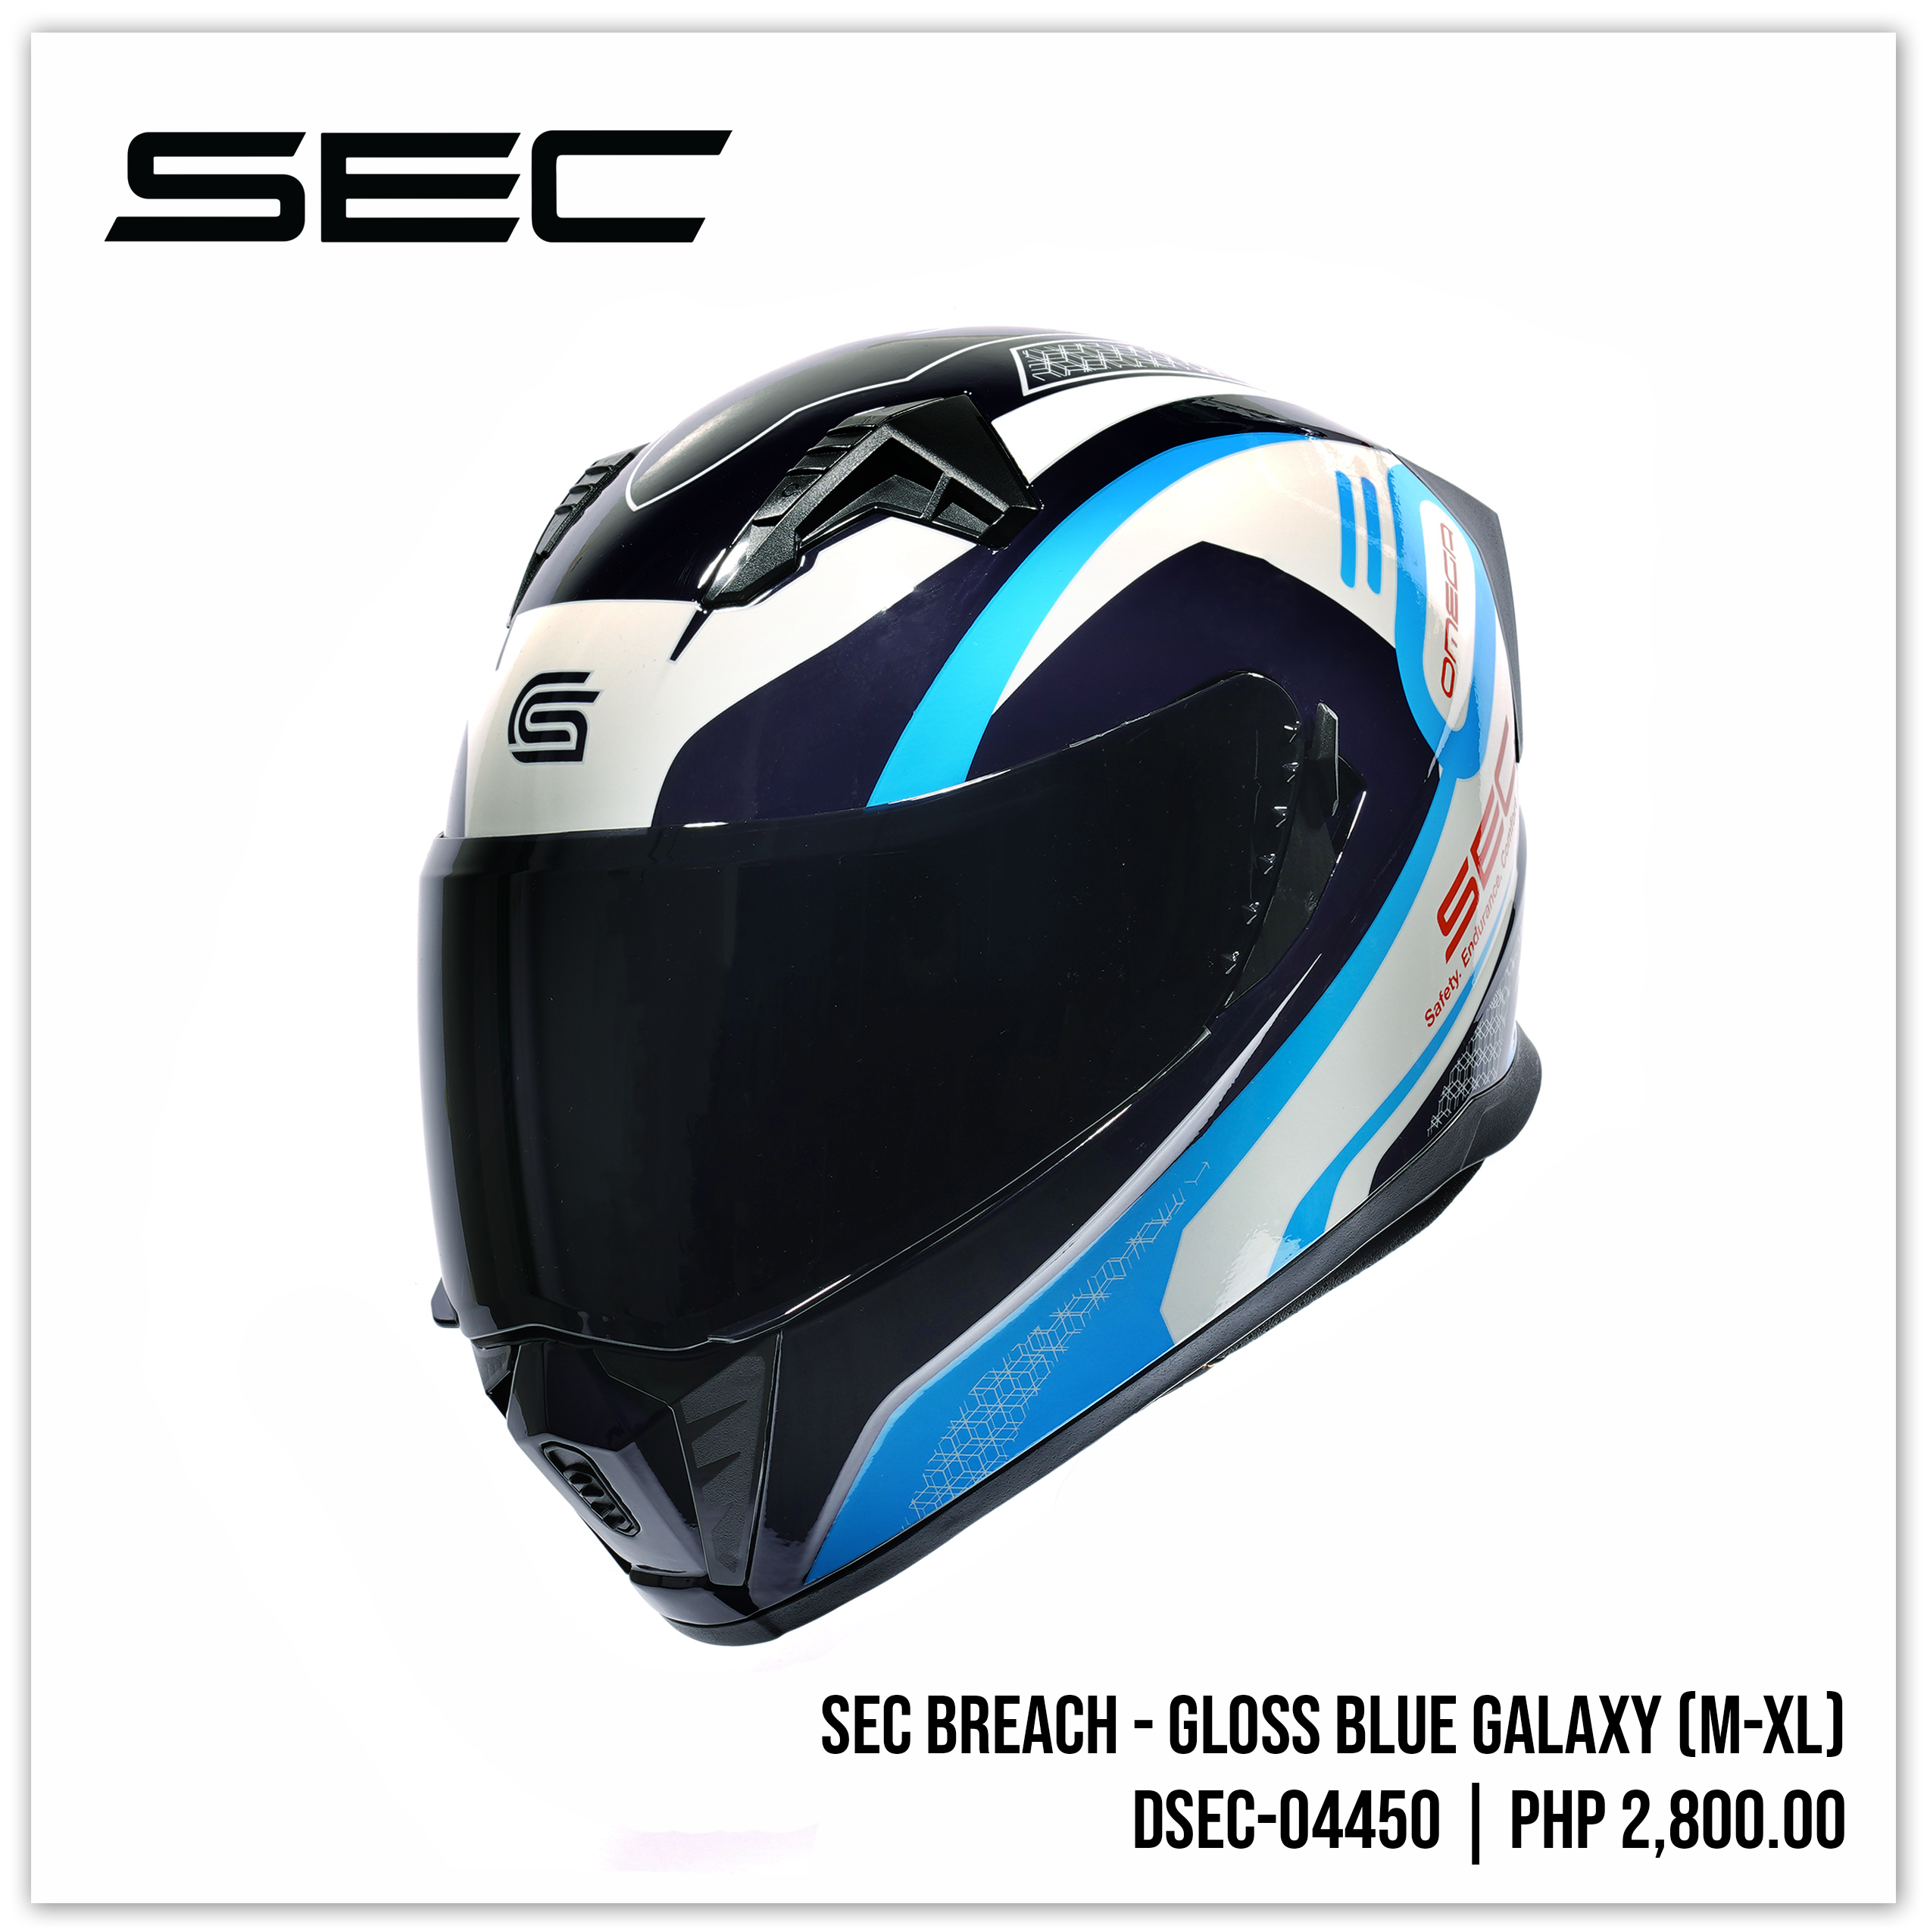 SEC Breach - Gloss Blue Galaxy